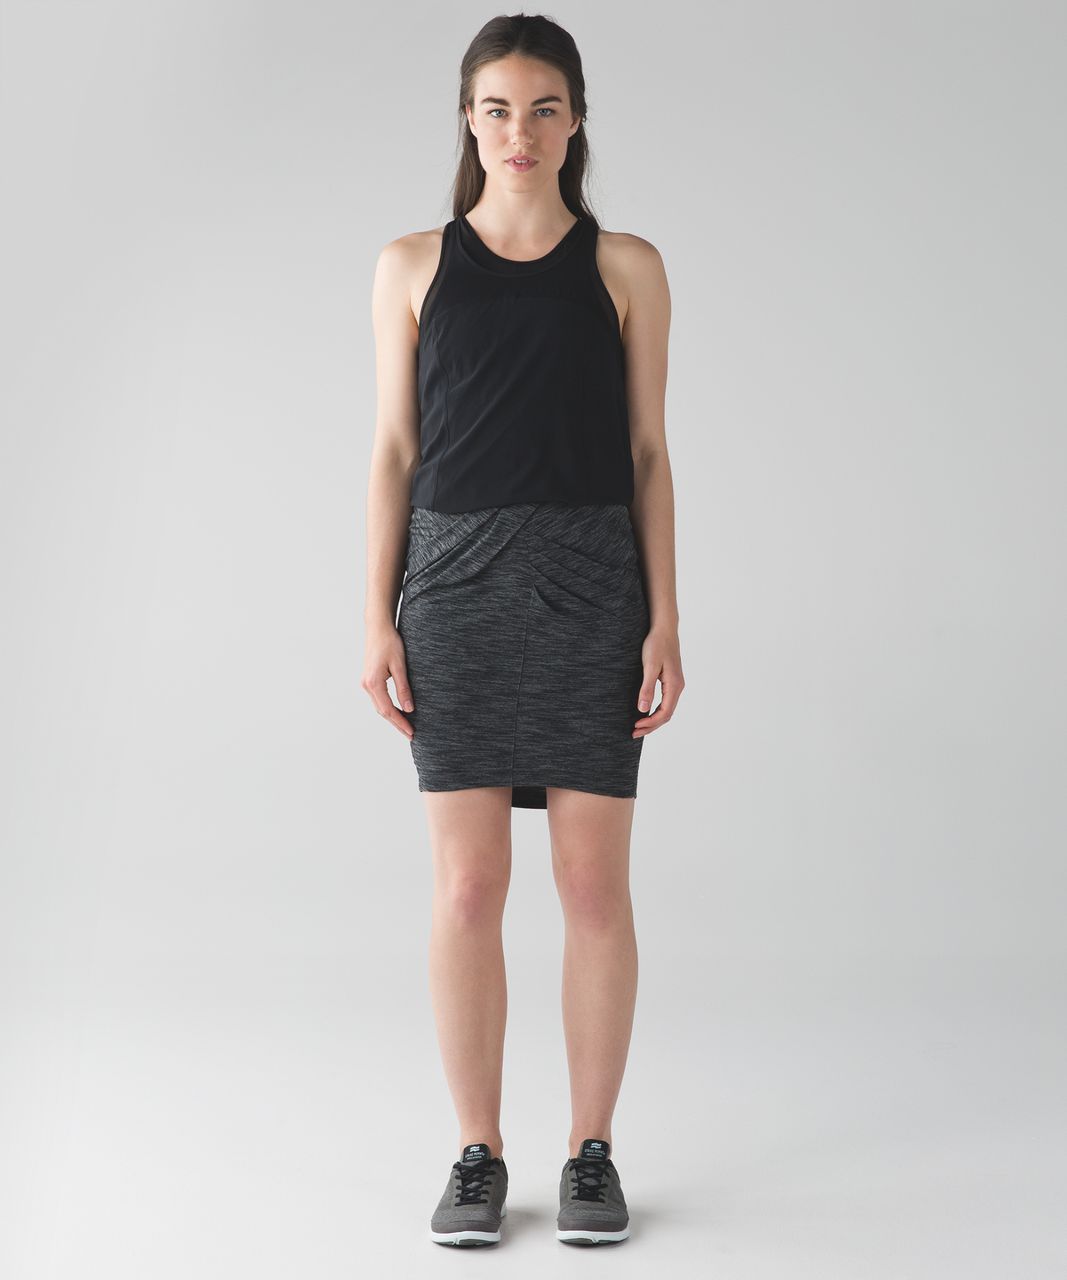 Lululemon Yoga Haven Skirt - Heathered Black